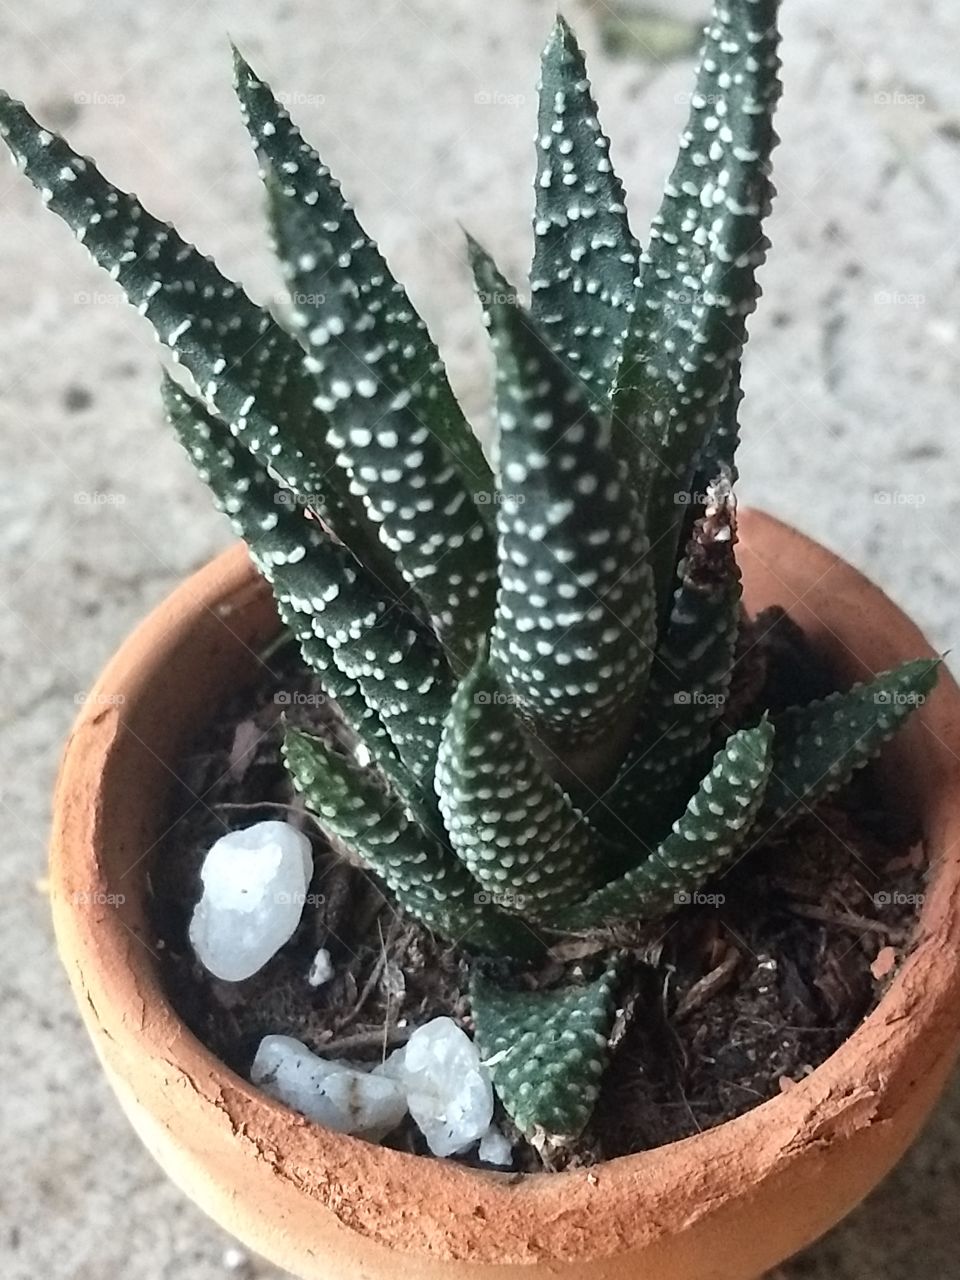 Little cactus